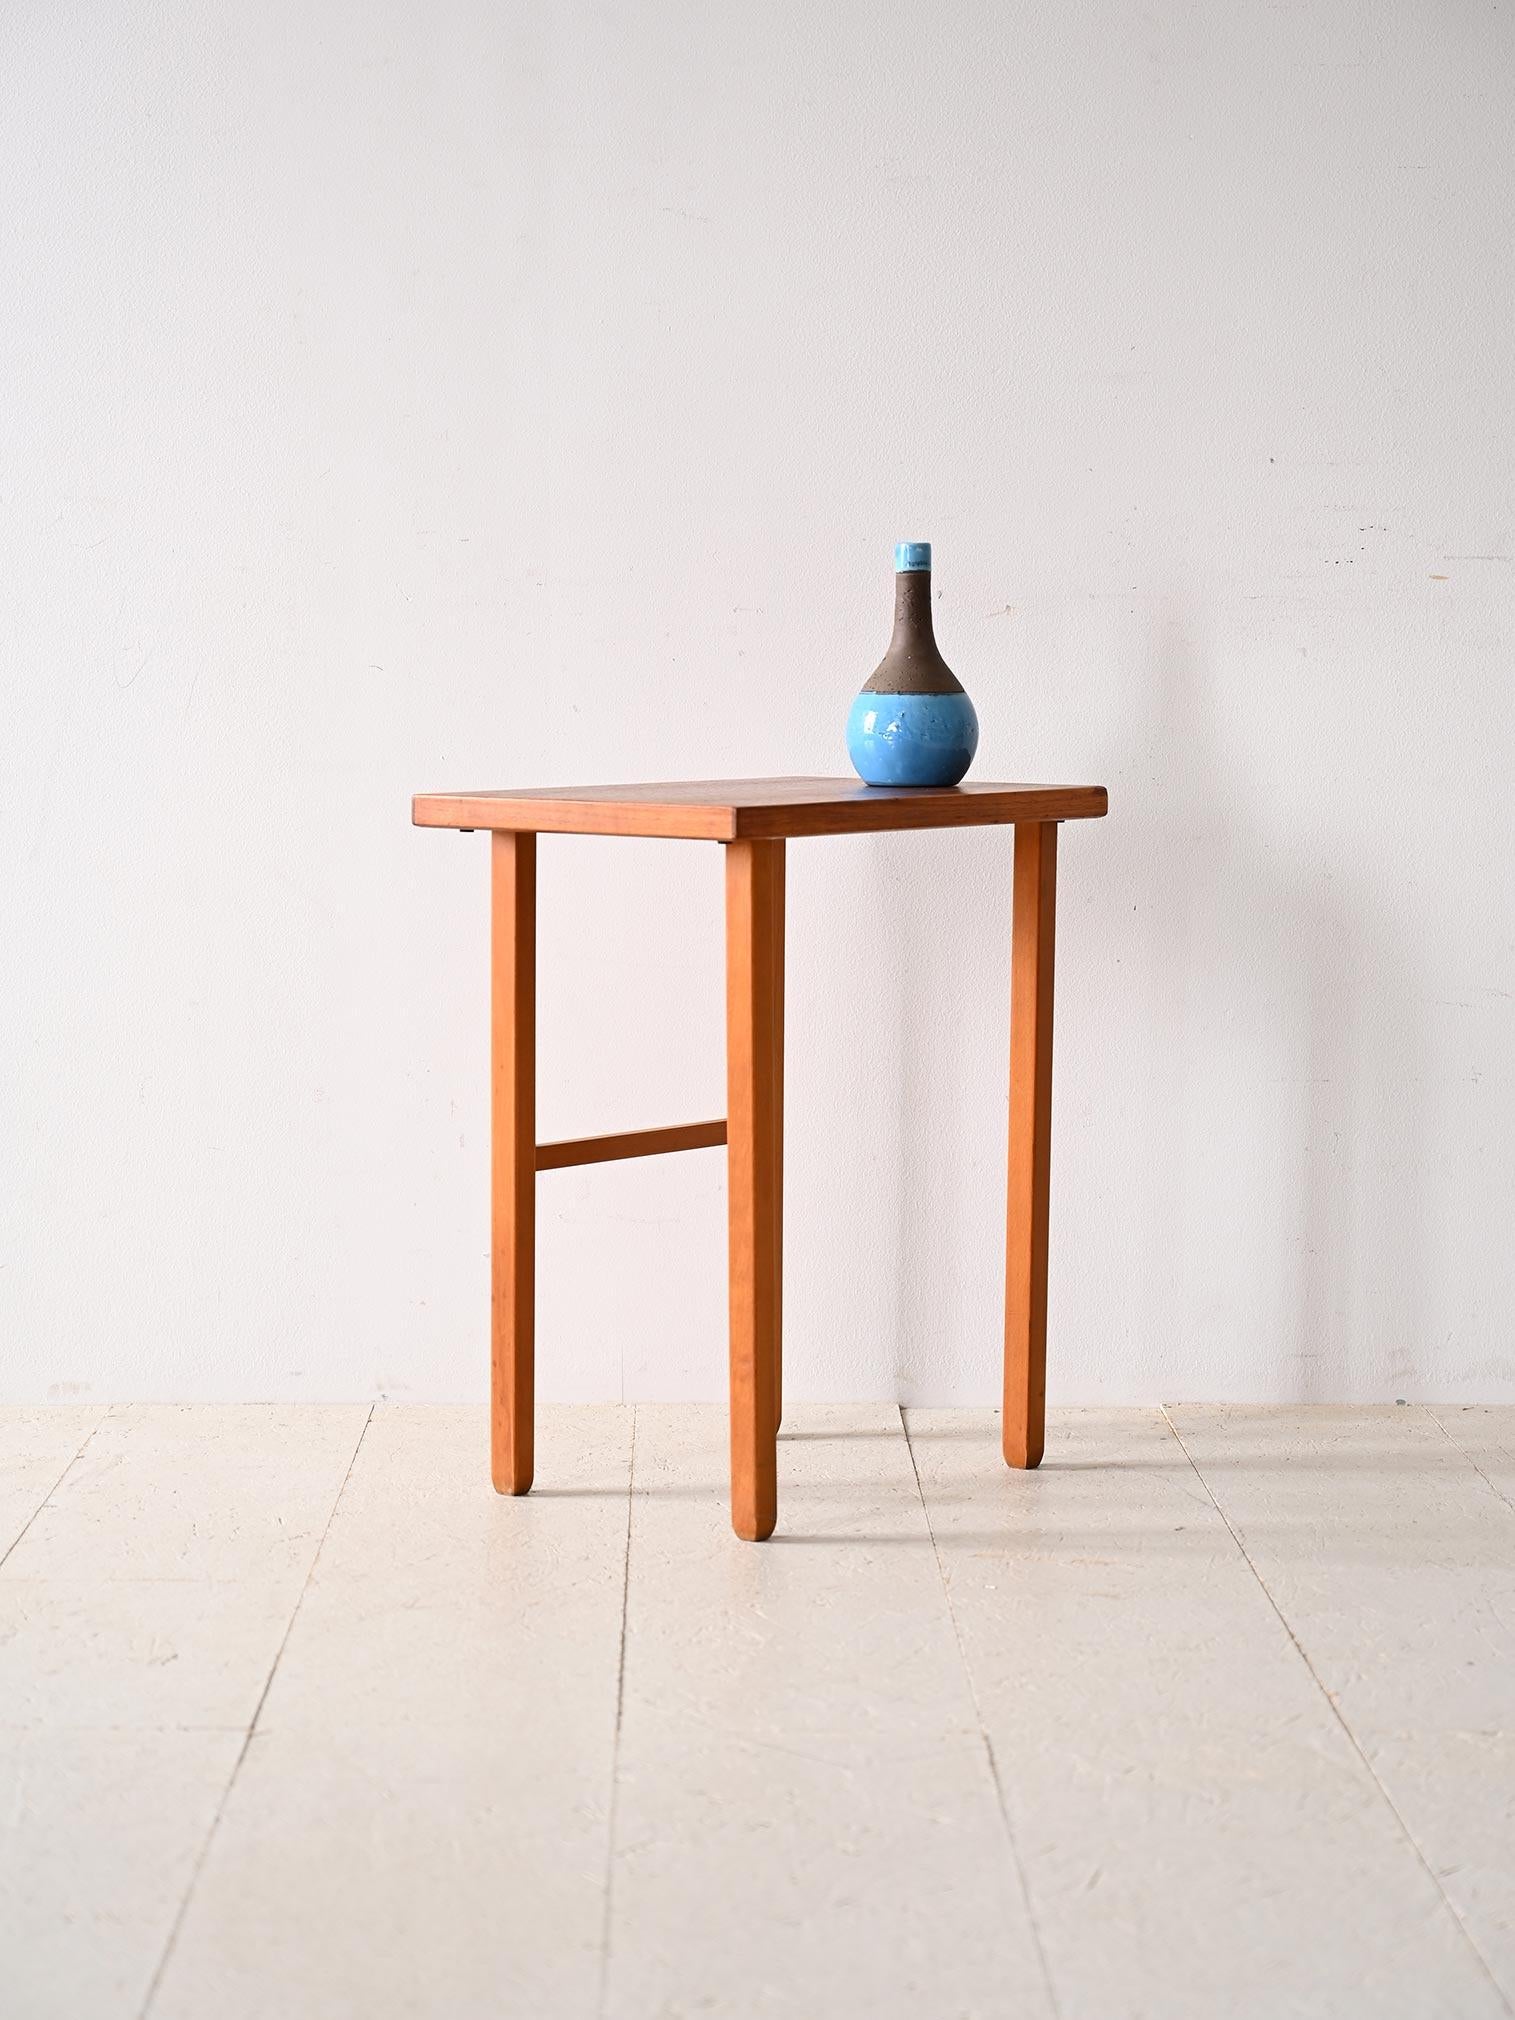 Skandinavischer Nachttisch mit rechteckiger Platte.

Ein Möbelstück, das trotz seiner geringen Größe die Essenz des nordischen Designs verkörpert. Seine minimalen, regelmäßigen Linien und sein Teakholzrahmen machen ihn zu einer perfekten Ergänzung